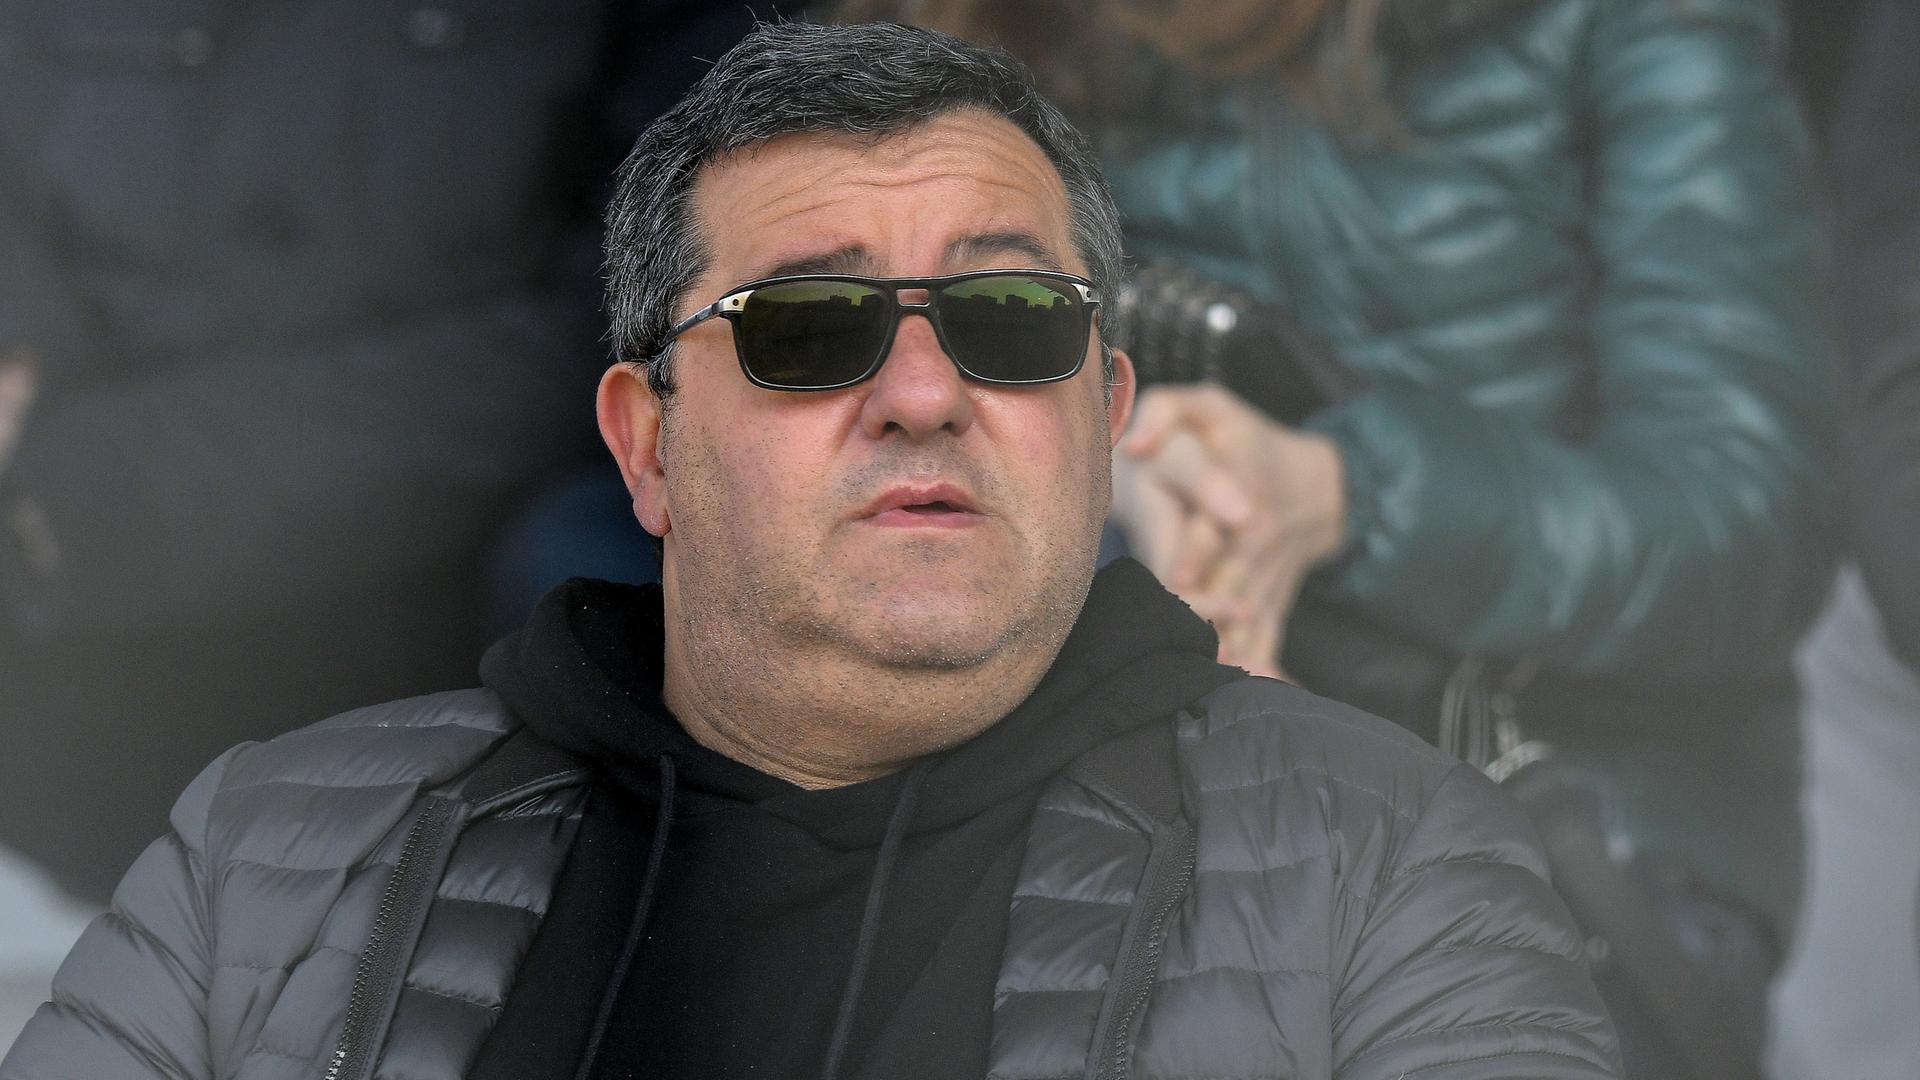 Der Spielerberater Mino Raiola sitzt mit Sonnenbrille im Stadion auf der Tribüne